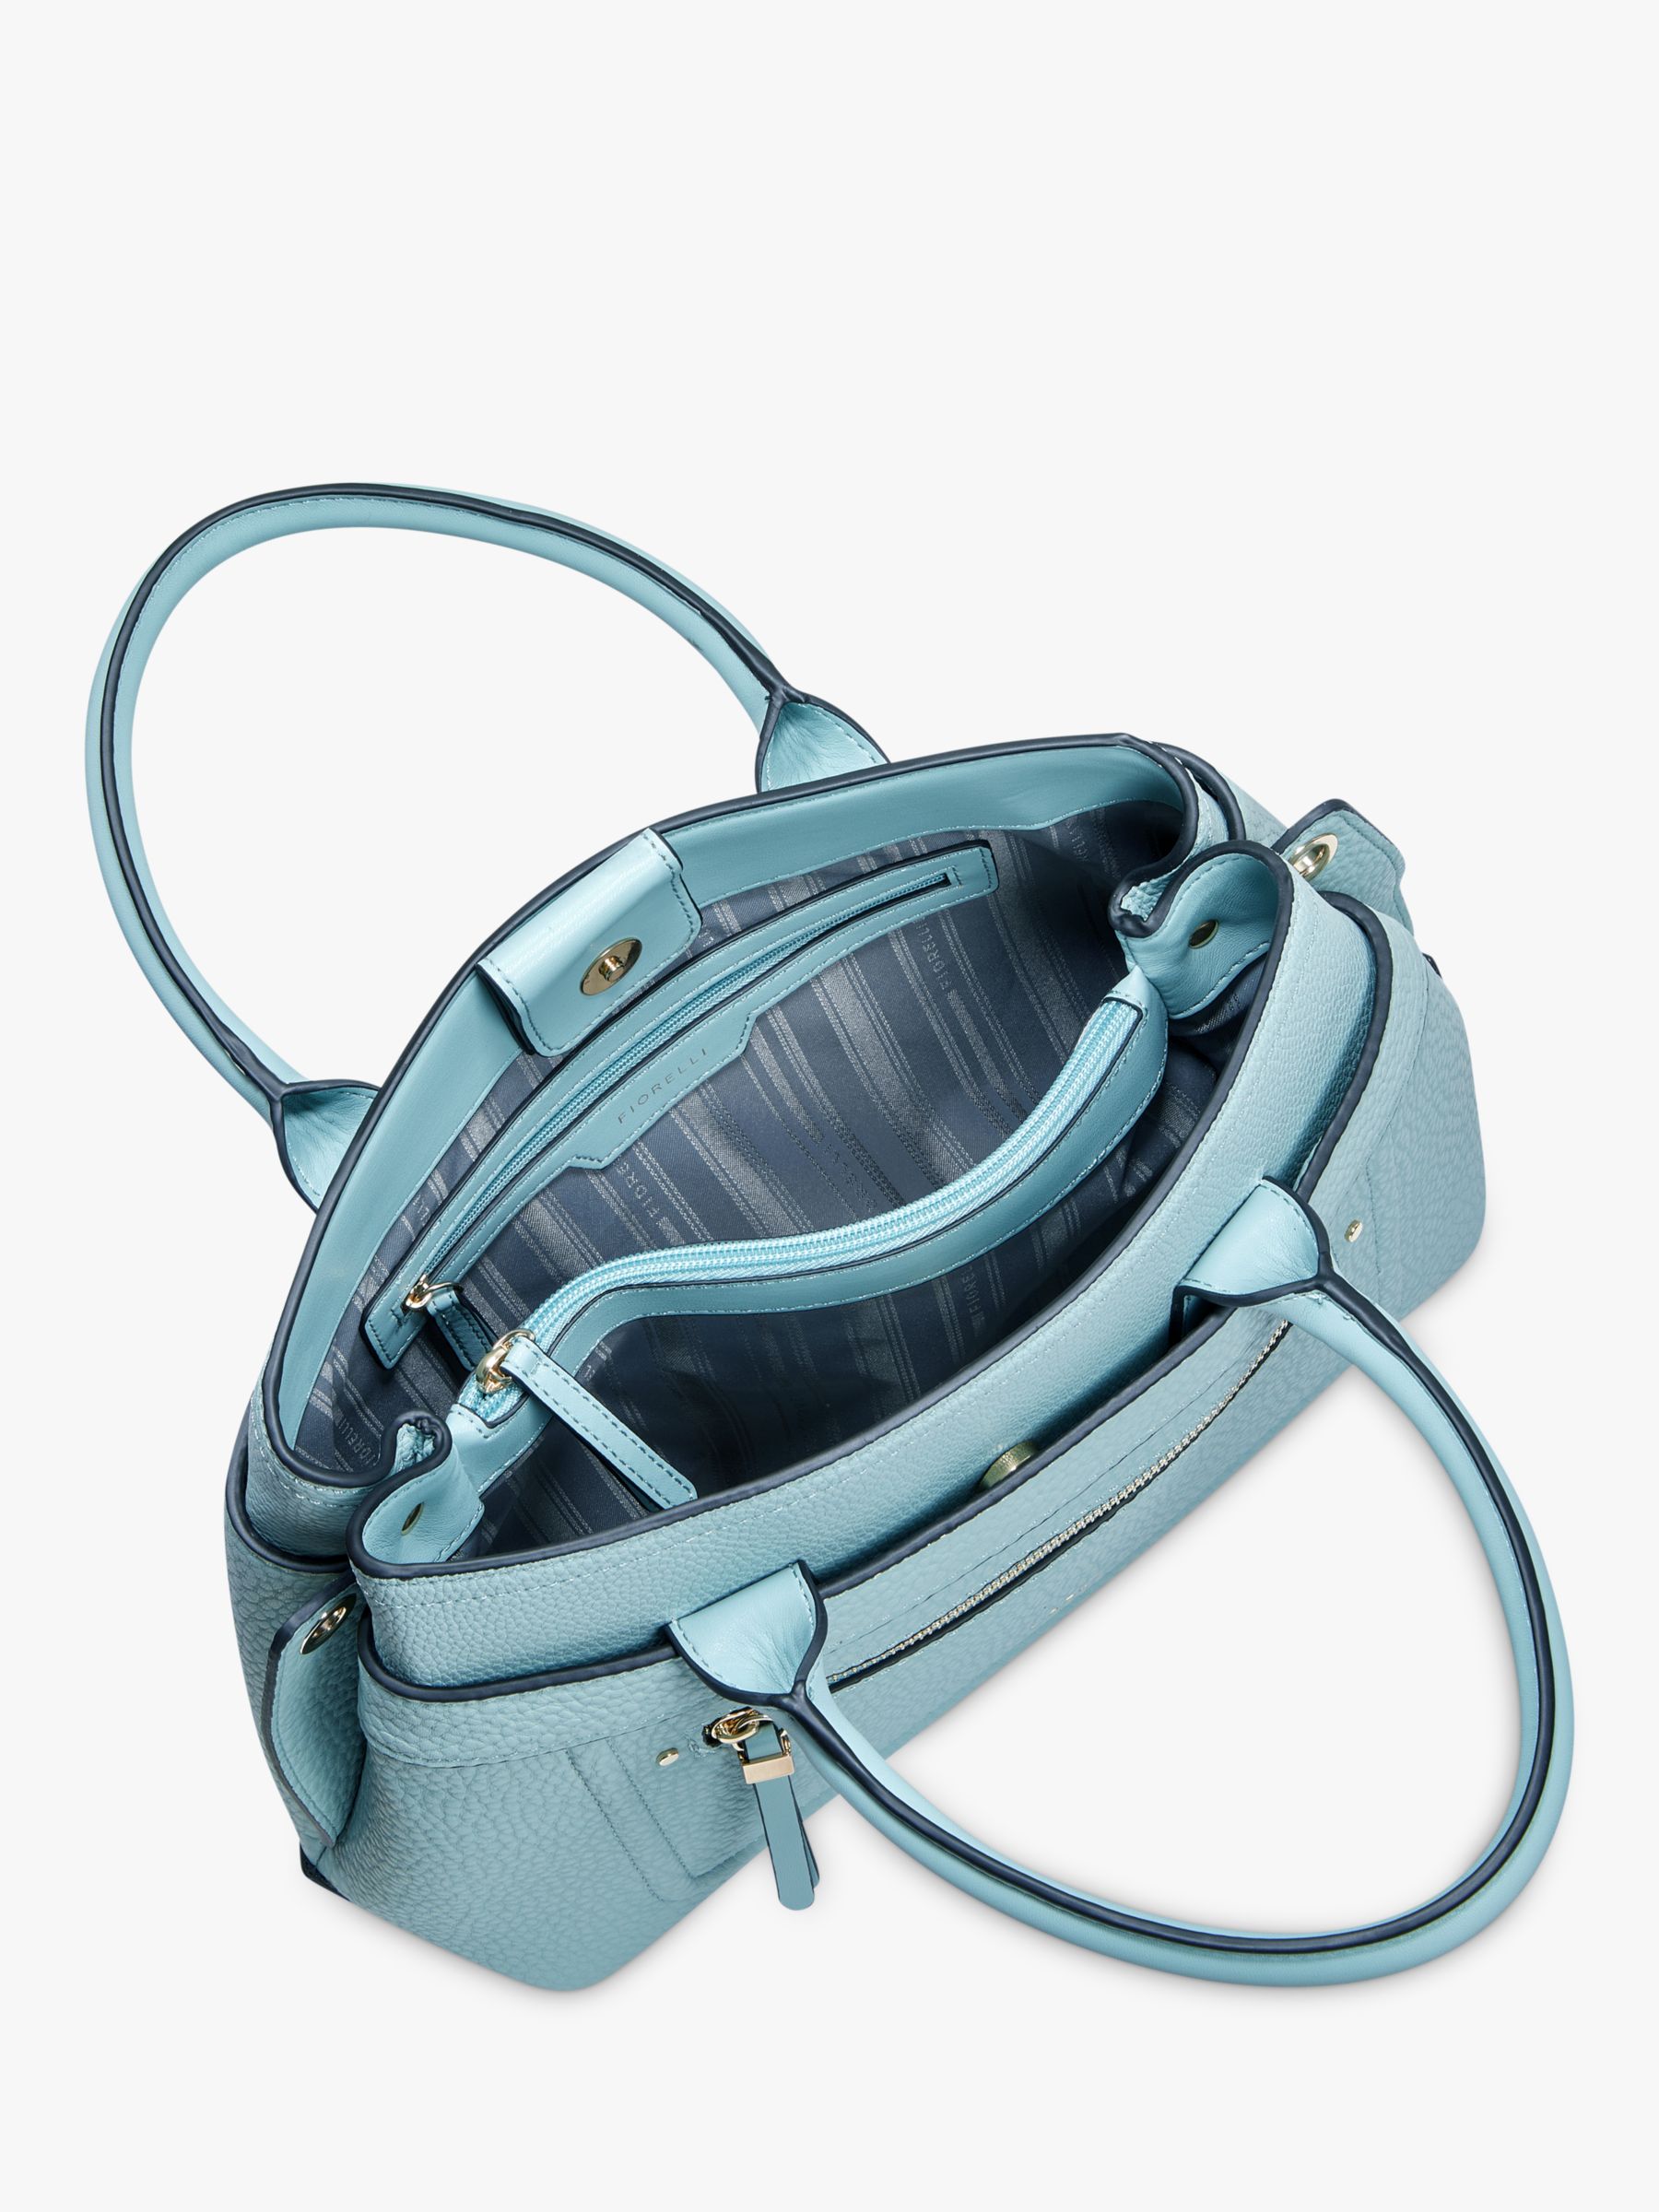 Fiorelli Rami Grab Bag, Ocean Blue at John Lewis & Partners